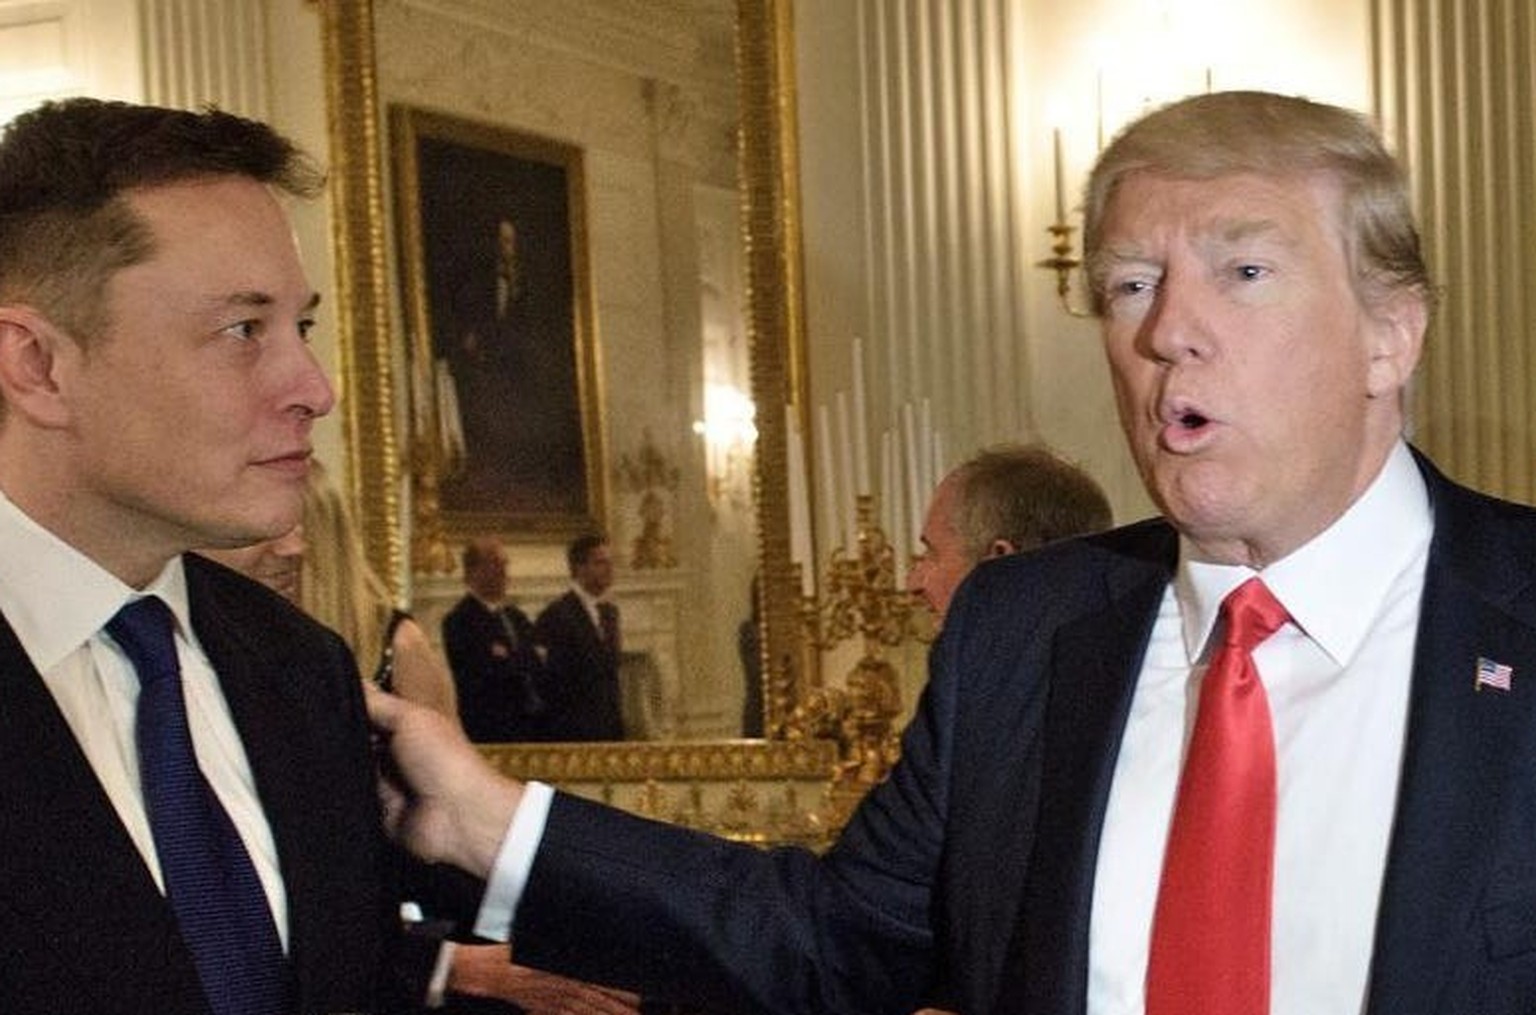 Vendredi 3 février 2017, Donald Trump, alors président, discute avec Elon Musk, PDG de Tesla et de SpaceX... dans la salle-à-manger de la Maison Blanche.